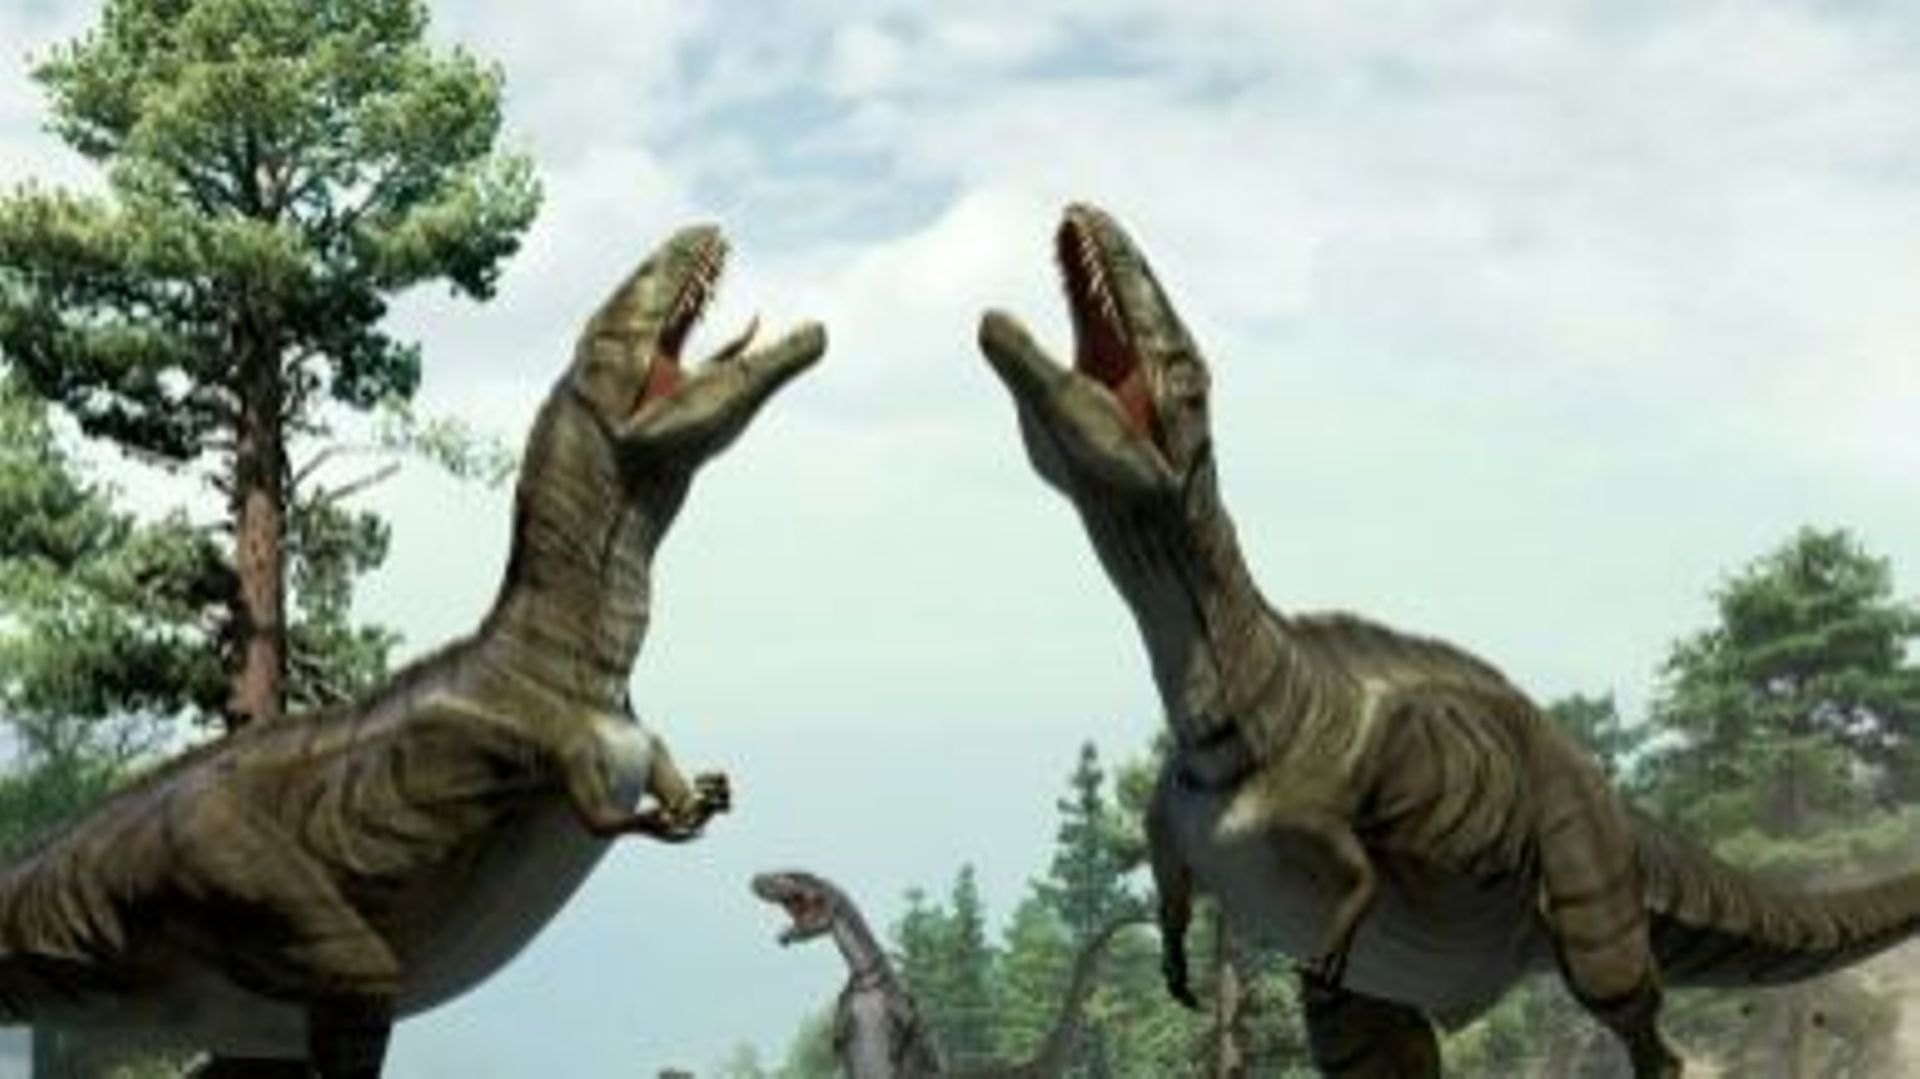 Une image fournie le 7 janvier 2016 par le groupe Nature montre des théropodes, un groupe de dinosaures qui comprend notamment le fameux Tyrannosaure 